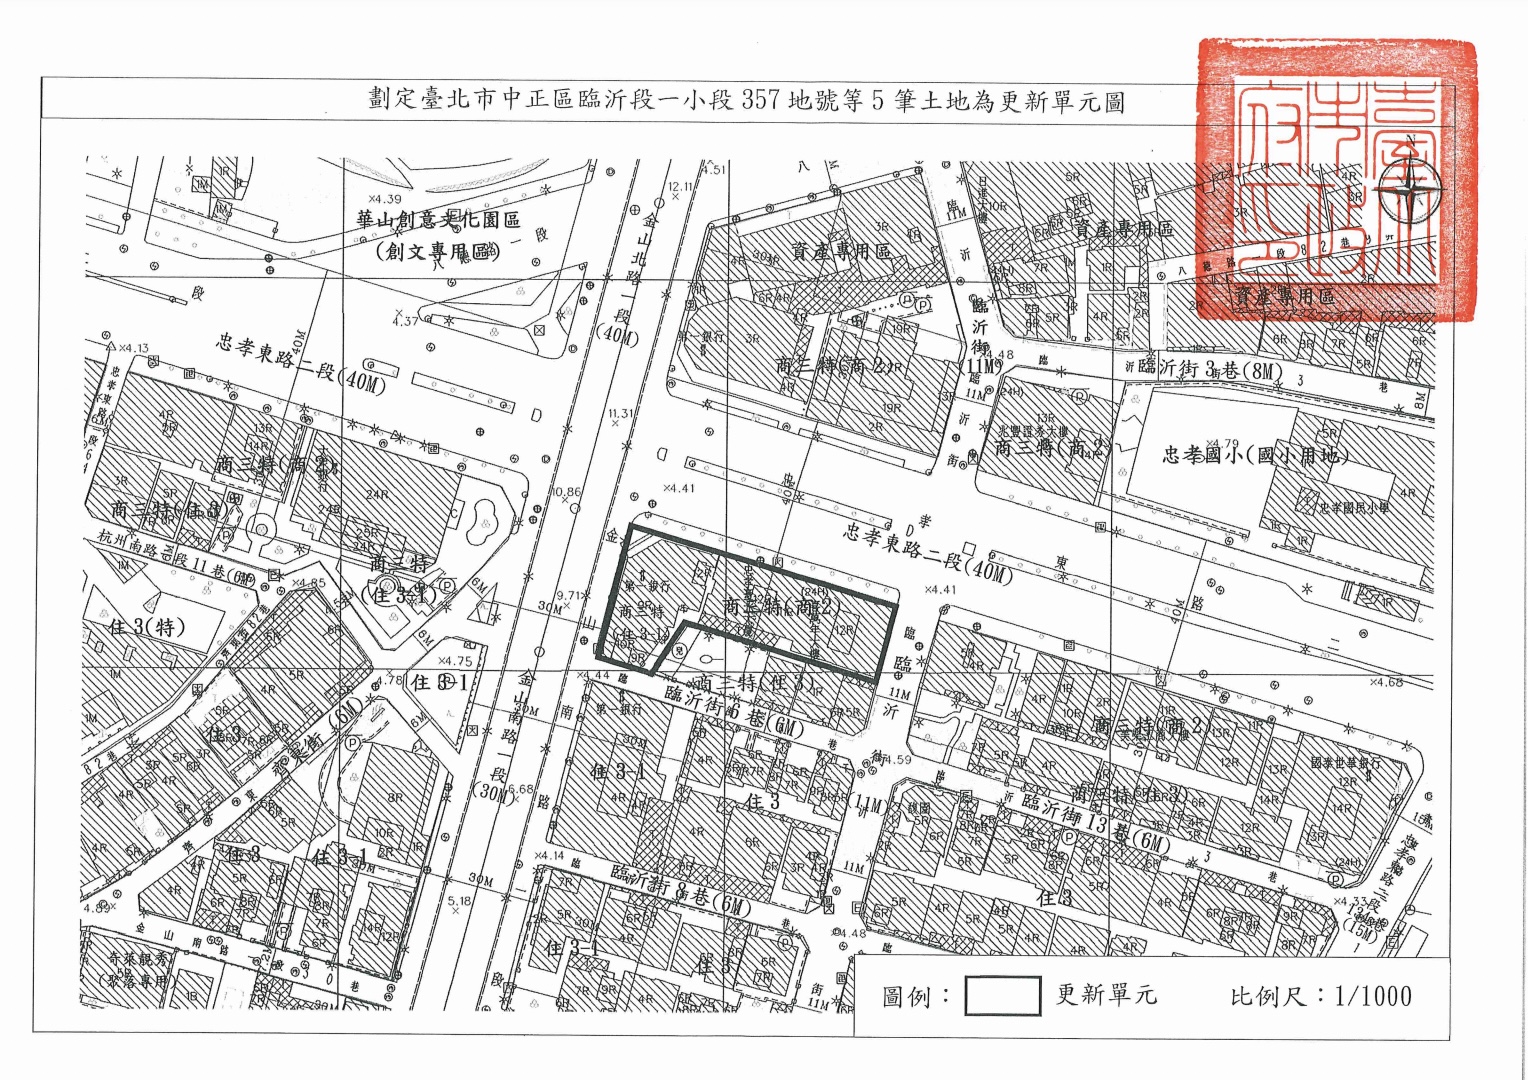 劃定臺北市中正區臨沂街五筆土地為更新單元